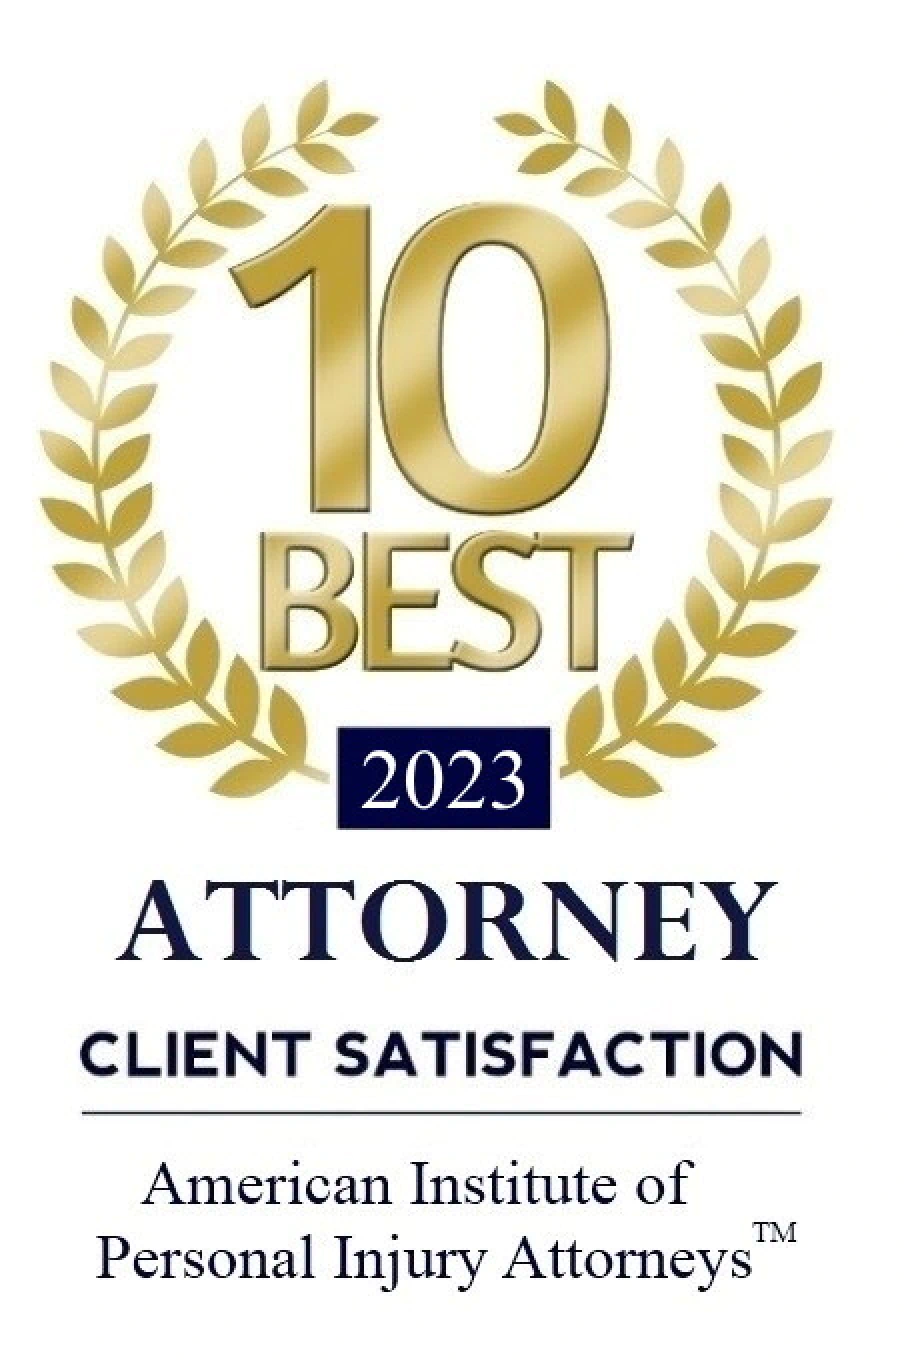 10 Best Attorney 2023 seal